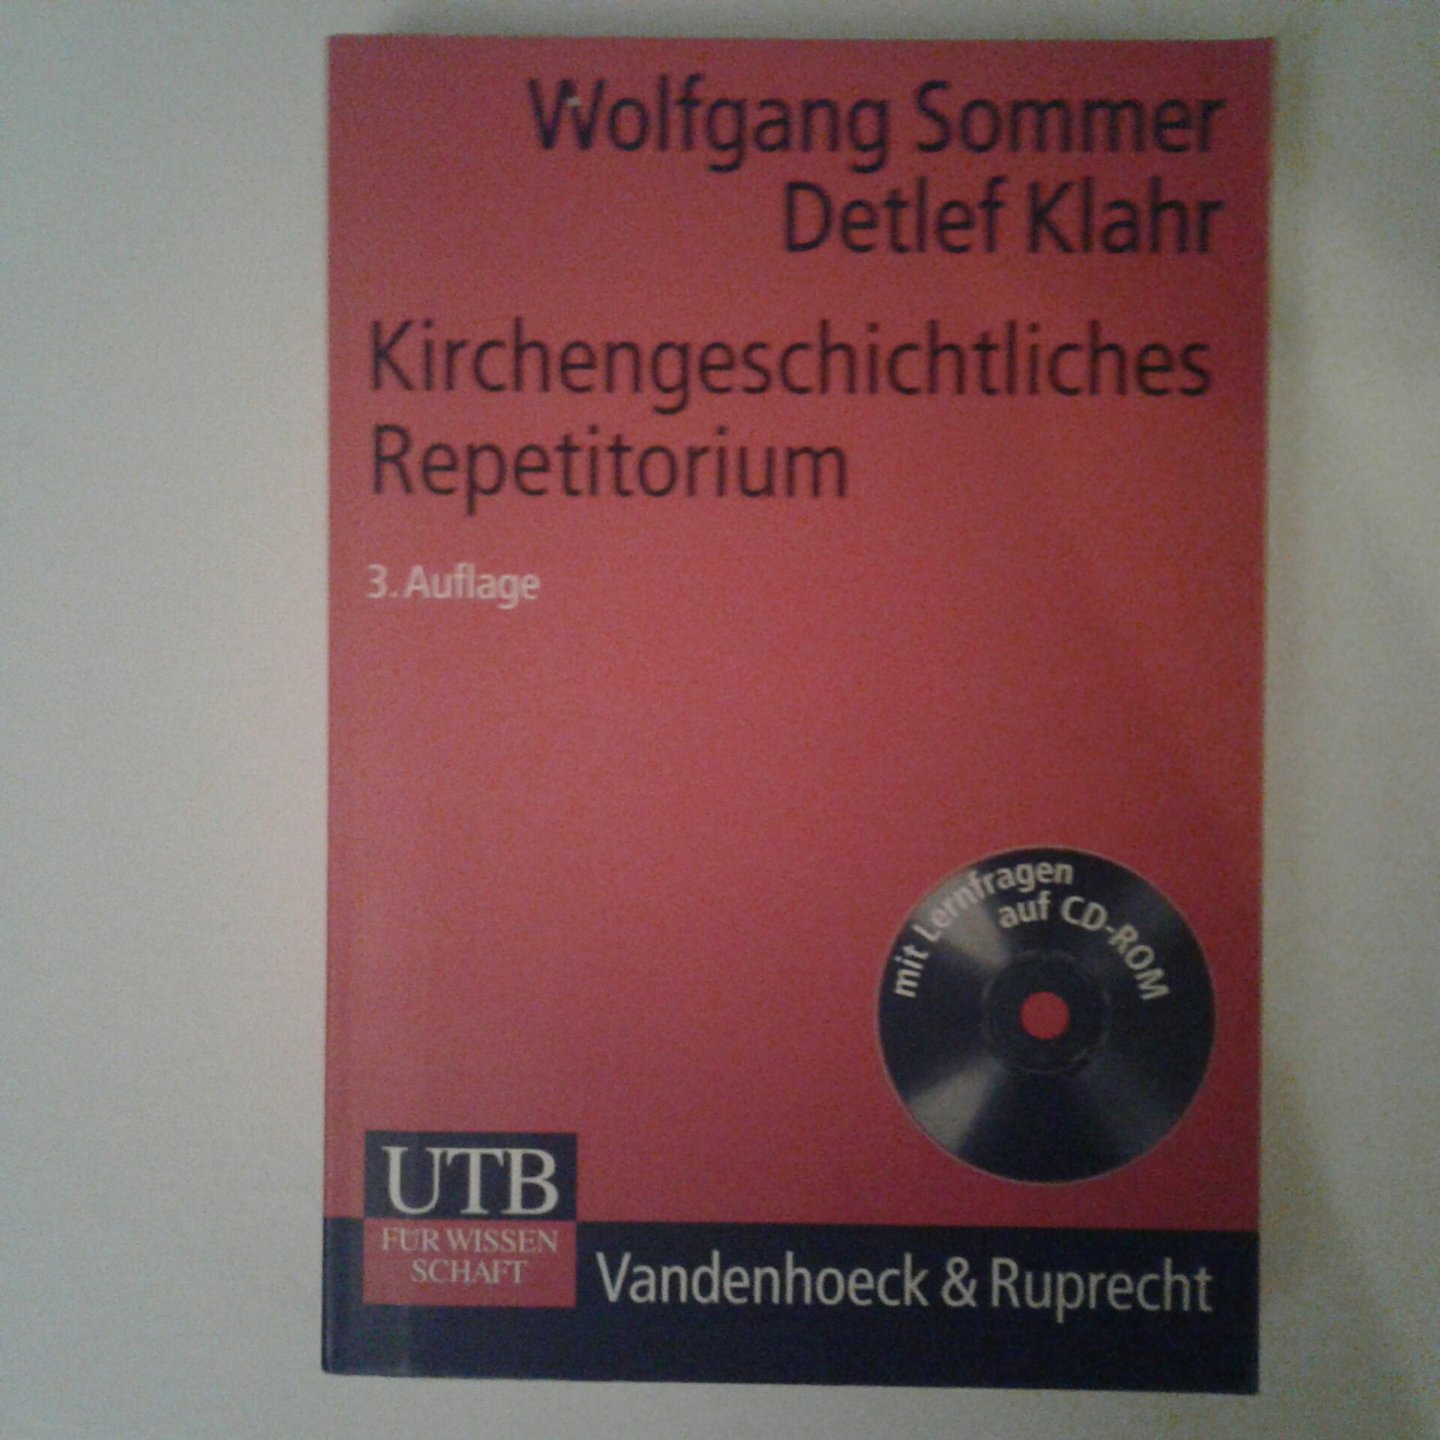 Sommer, wolfgang ; Klahr, Detlef - Kirchengeschichtliches Repetitorium